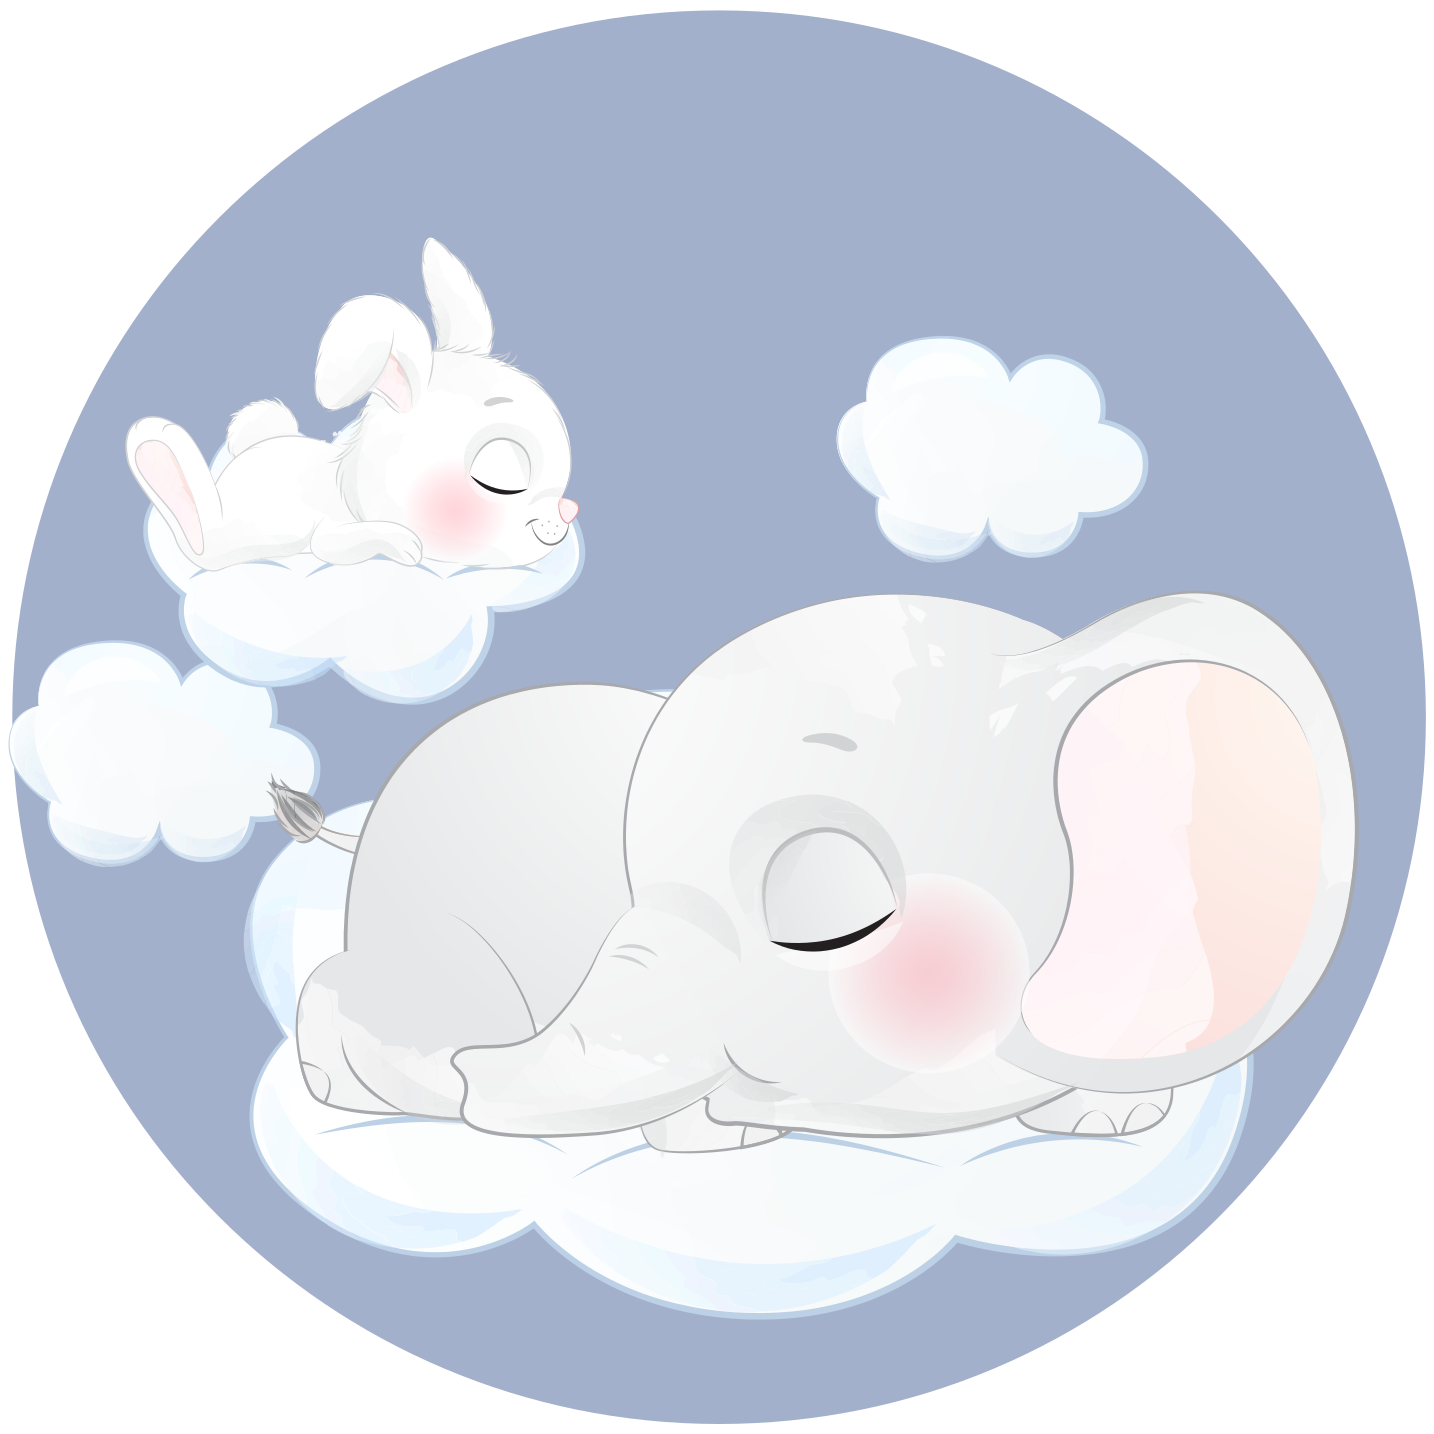 Vinilo decorativo cuento infantil Elefante y conejo durmiendo - TenVinilo